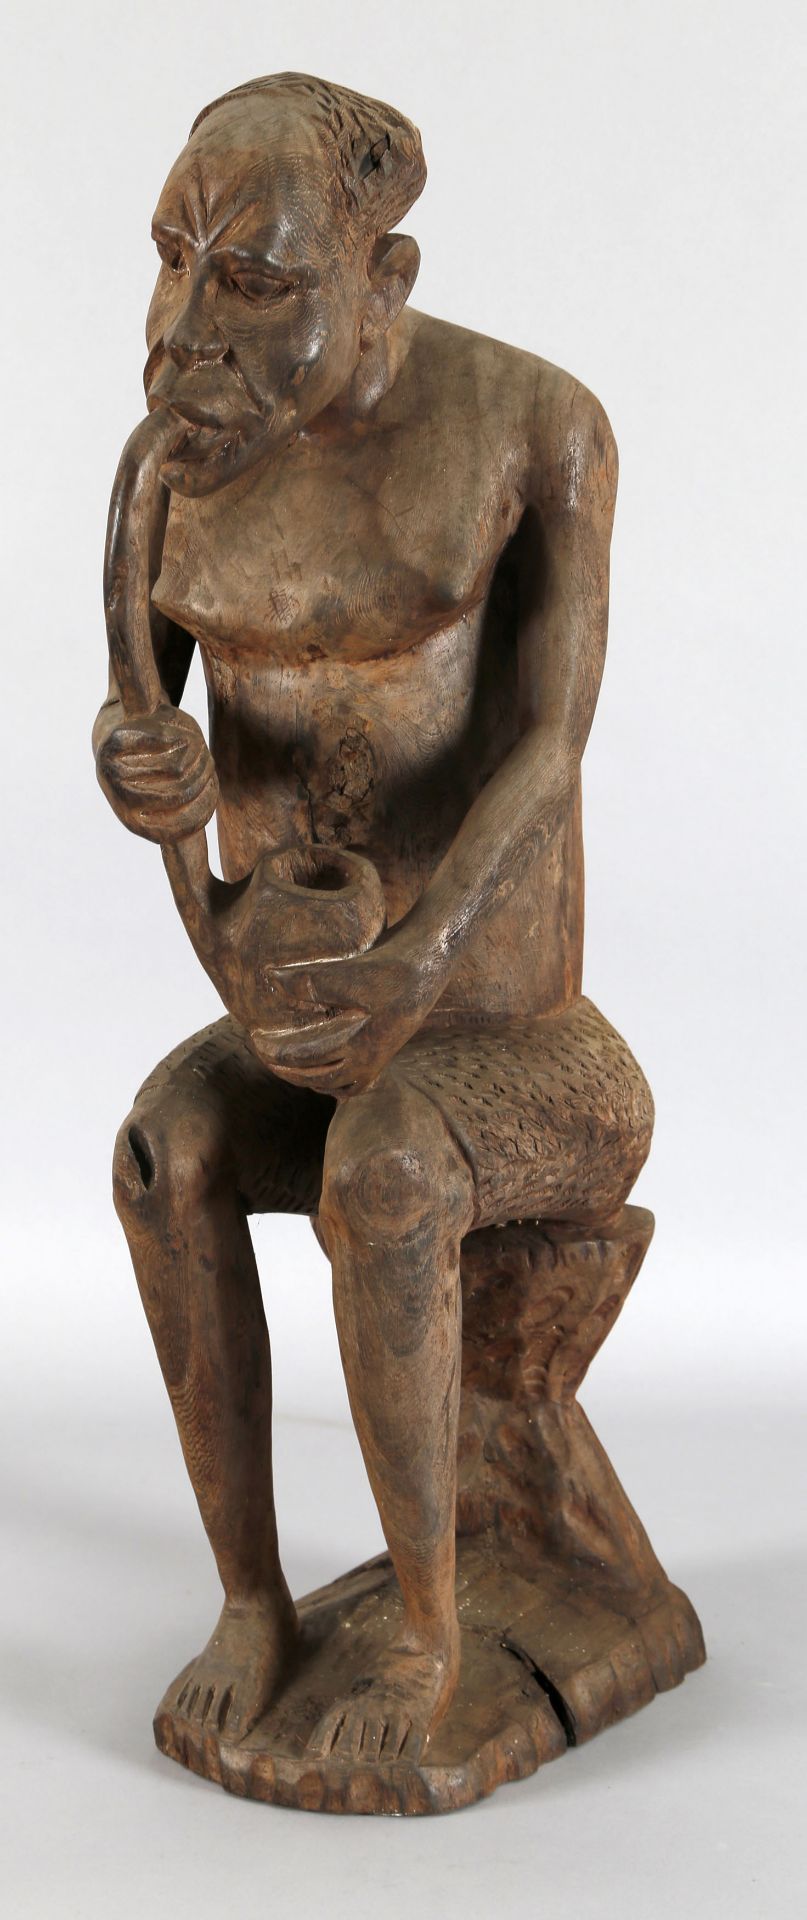 Afrikanische Figur eines Pfeifenrauchers, wohl Mbundu oder Makonde, 1960er Jahre